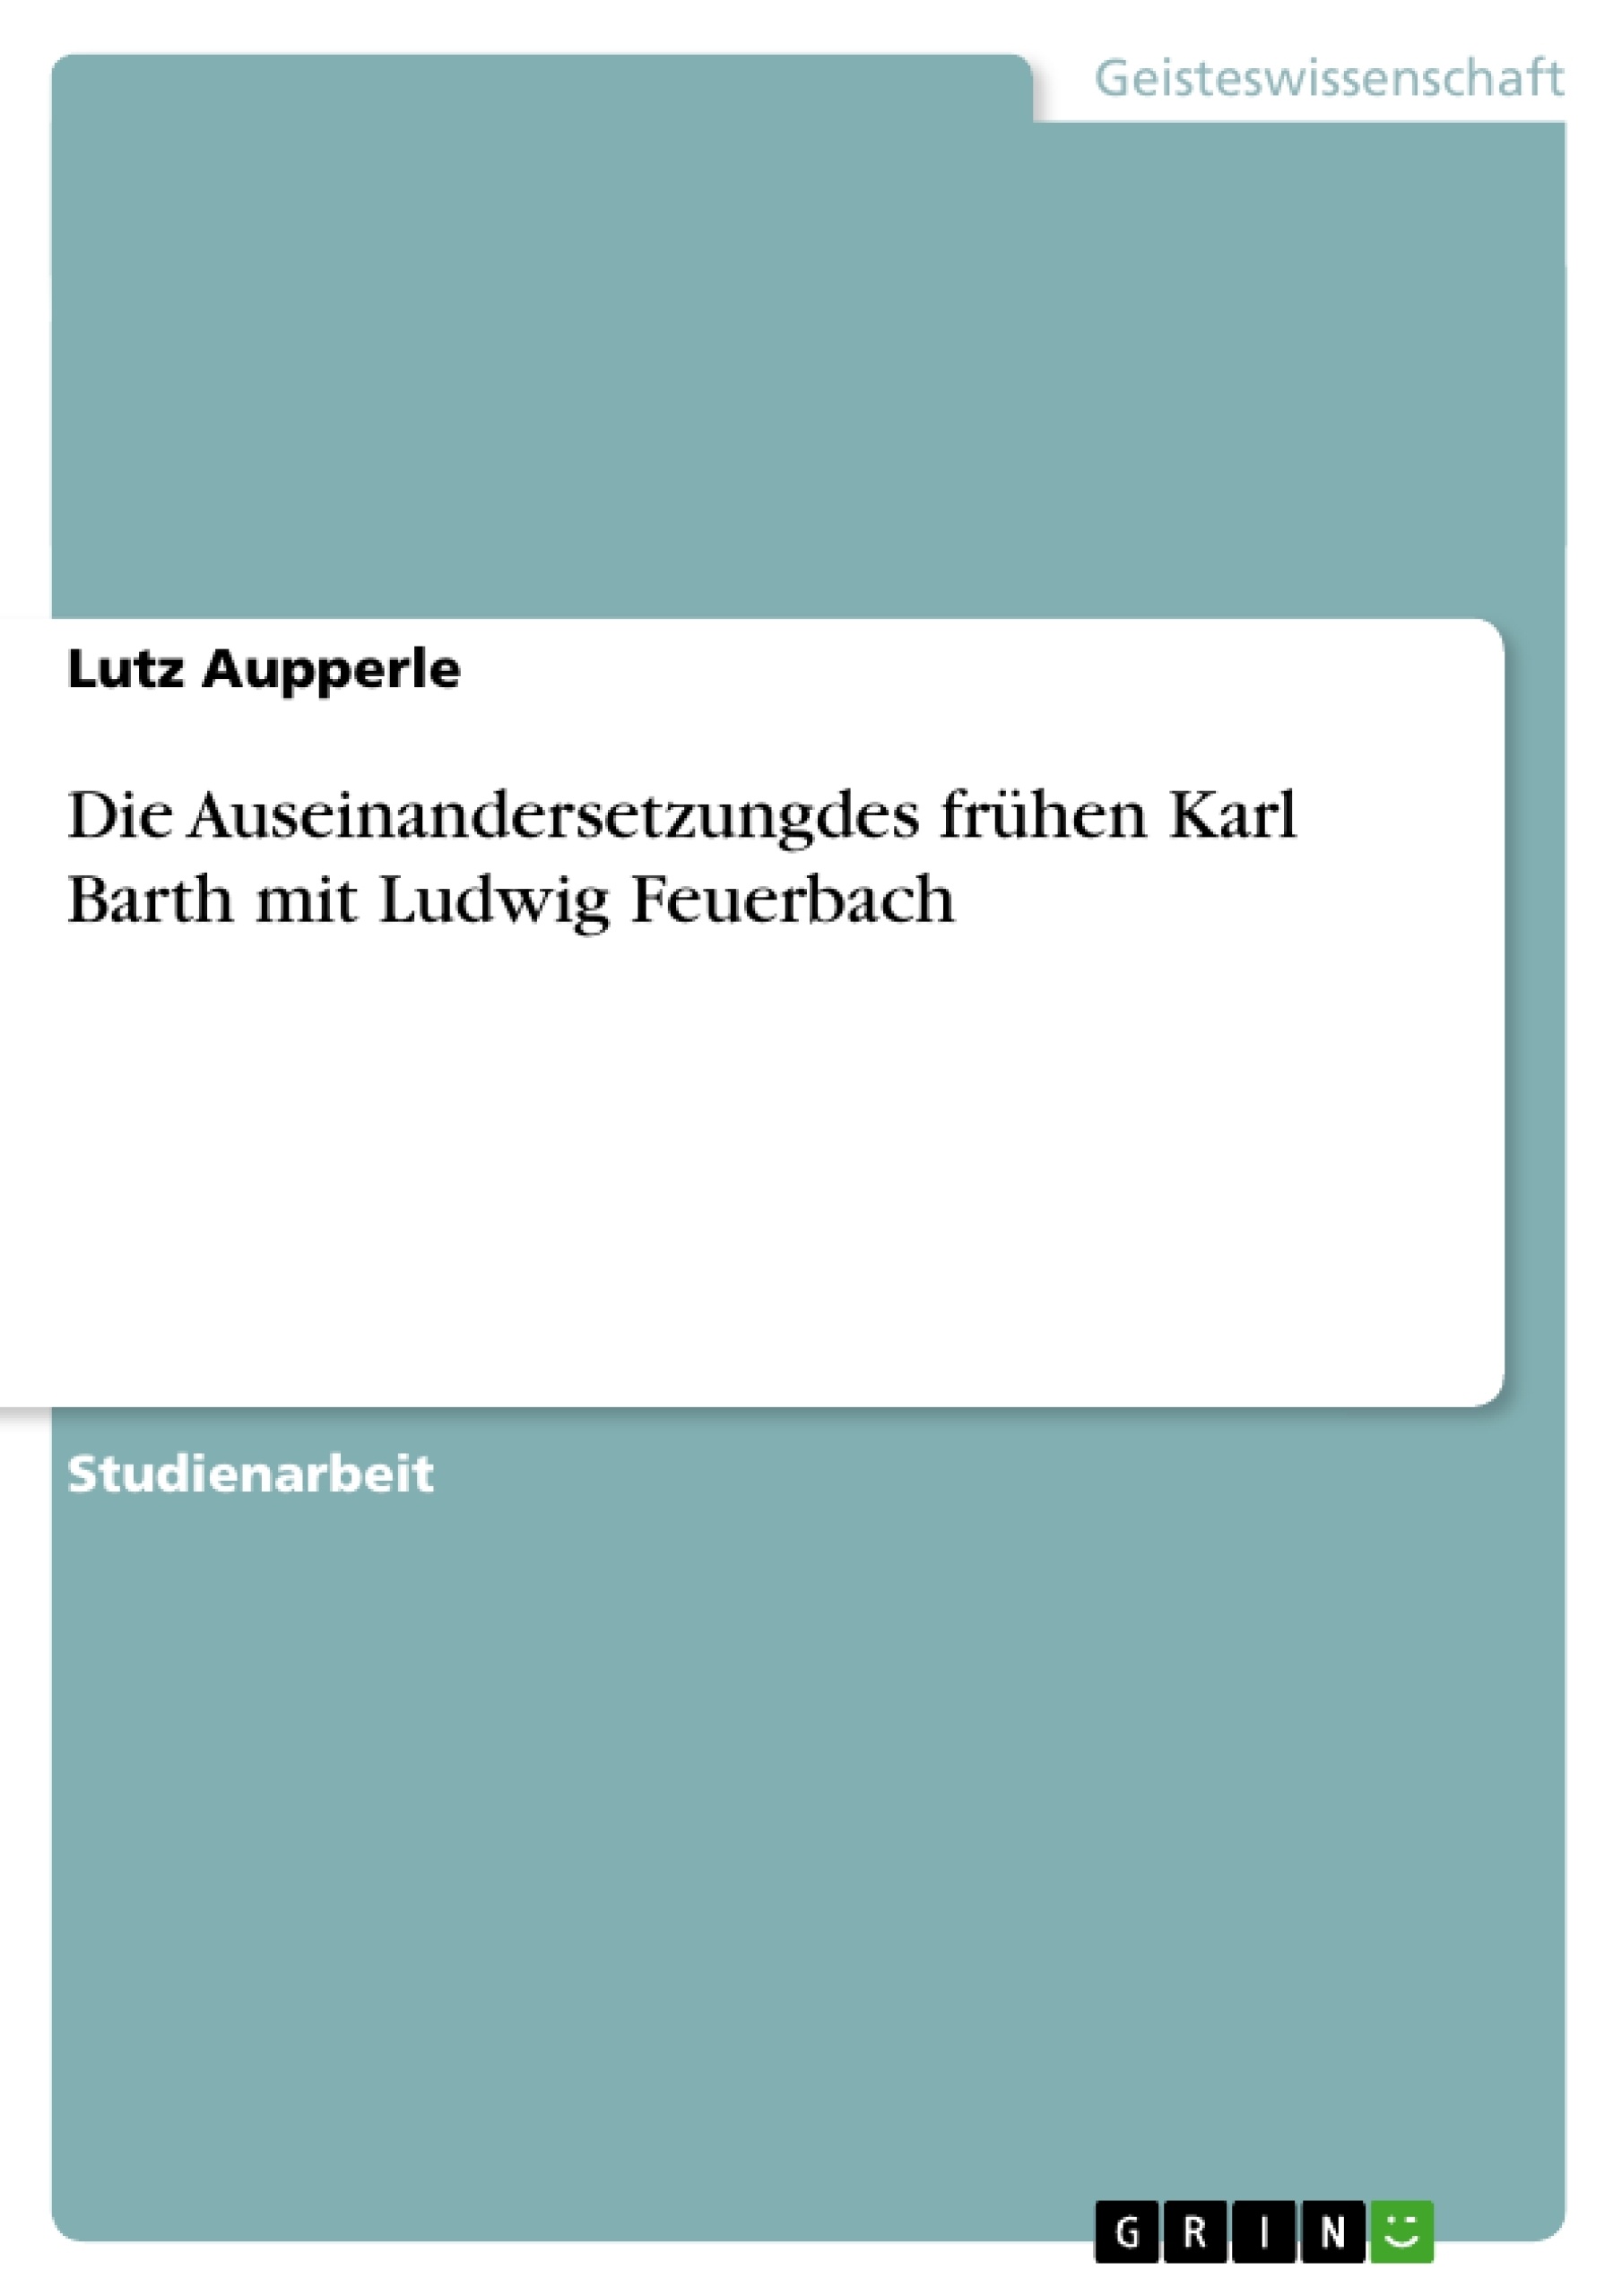 Título: Die Auseinandersetzungdes frühen Karl Barth mit Ludwig Feuerbach